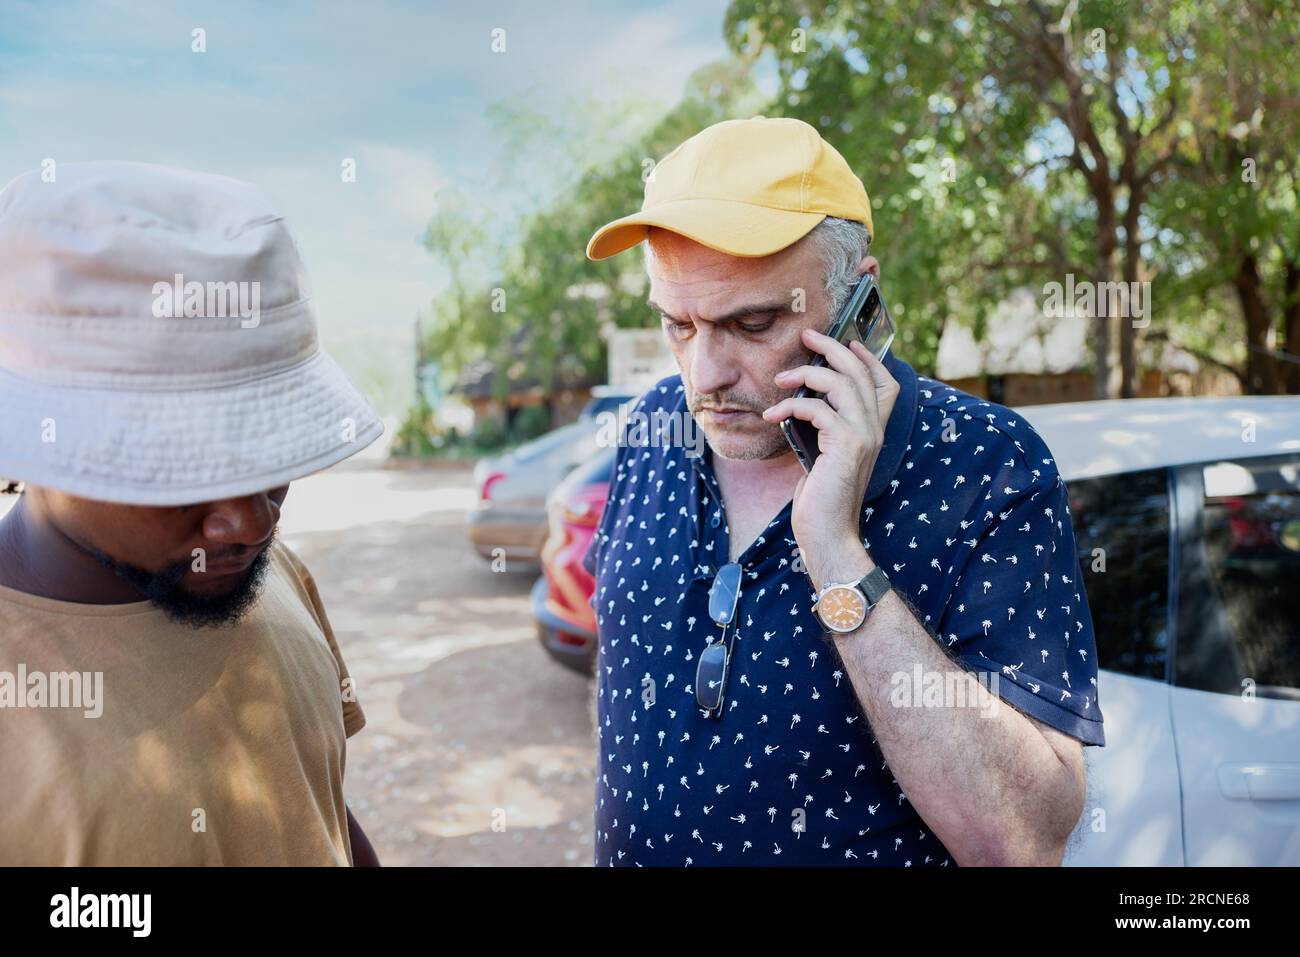 Ein alter Mann mit einer gelben Mütze, der telefoniert, sein junger afrikanischer Freund in der Nähe, der auf einer befahrenen Straße vor ein paar Autos steht Stockfoto